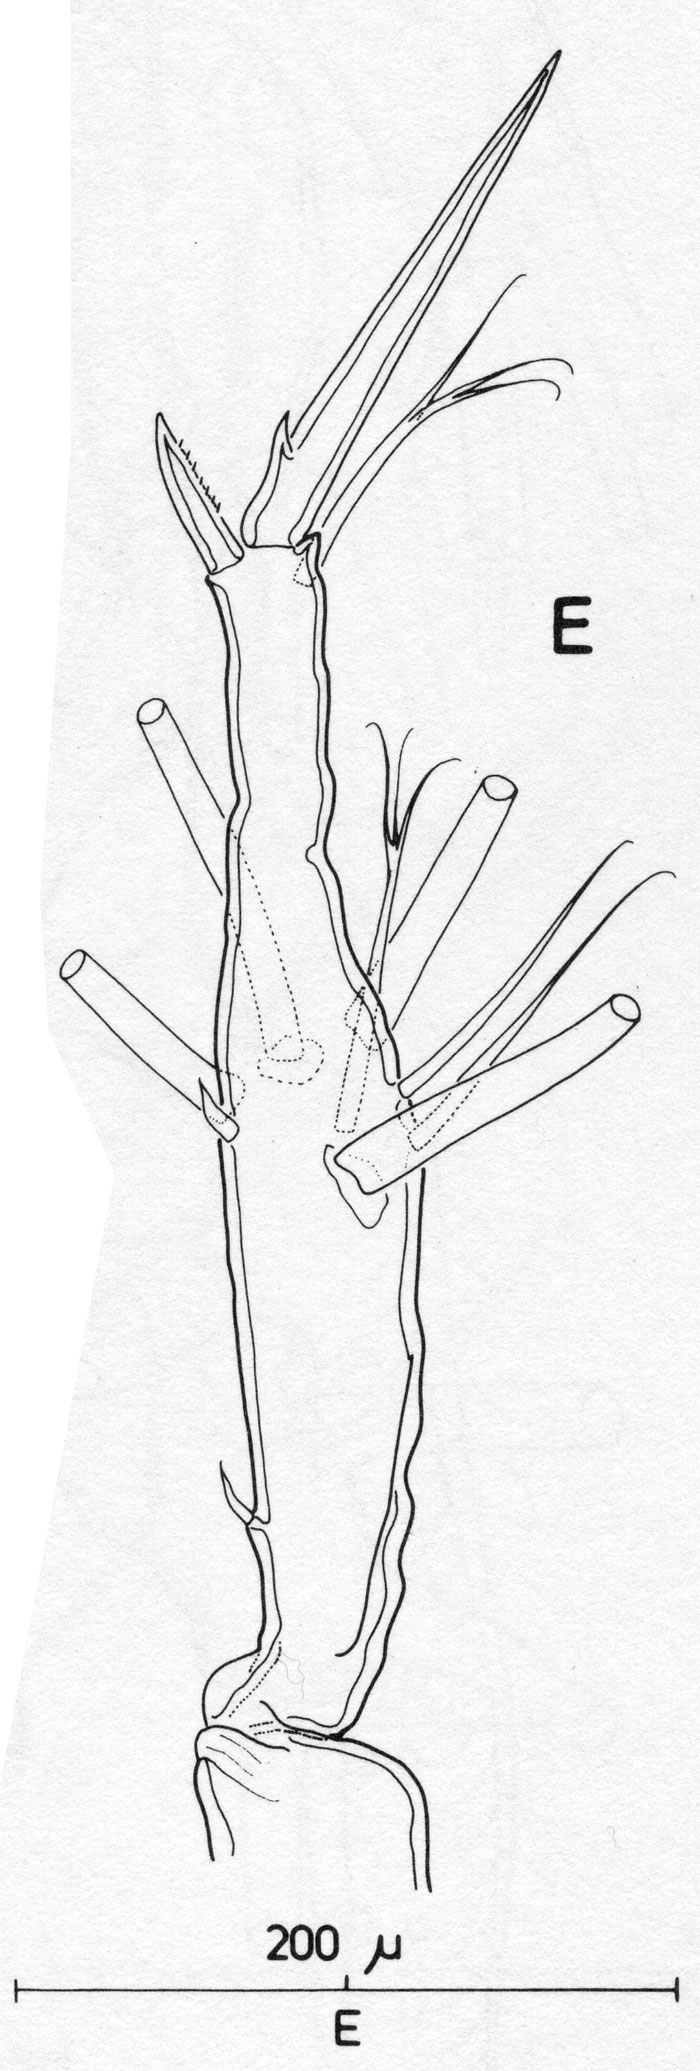 Espce Monstrilla longiremis - Planche 1 de figures morphologiques